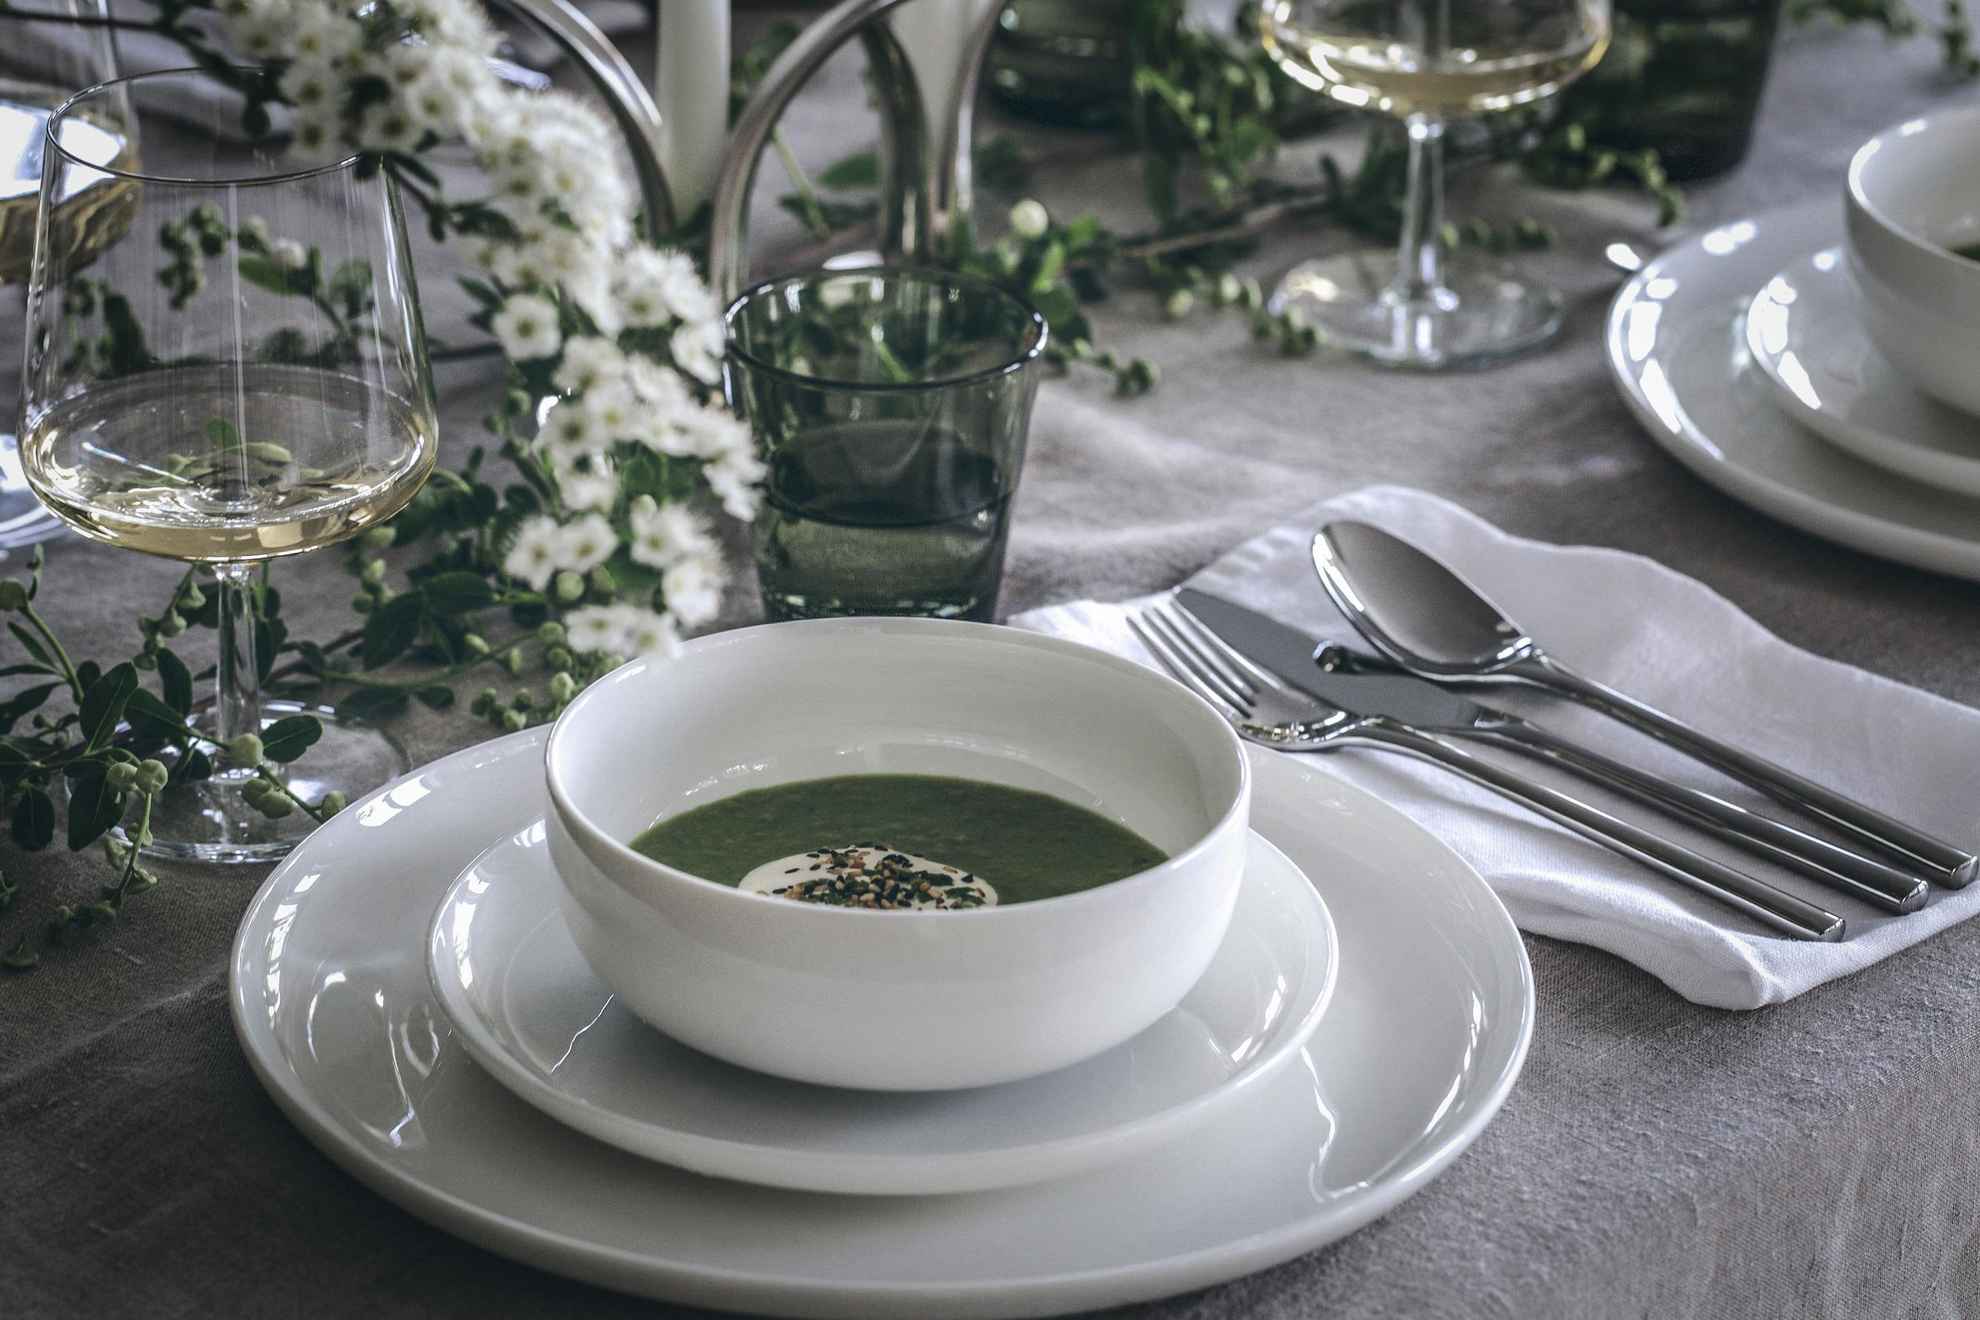 Gros plan sur une table où sont disposés des assiettes blanches et un bol de soupe aux pois verts, un verre à vin avec du vin blanc. Des fleurs blanches décorent la table.